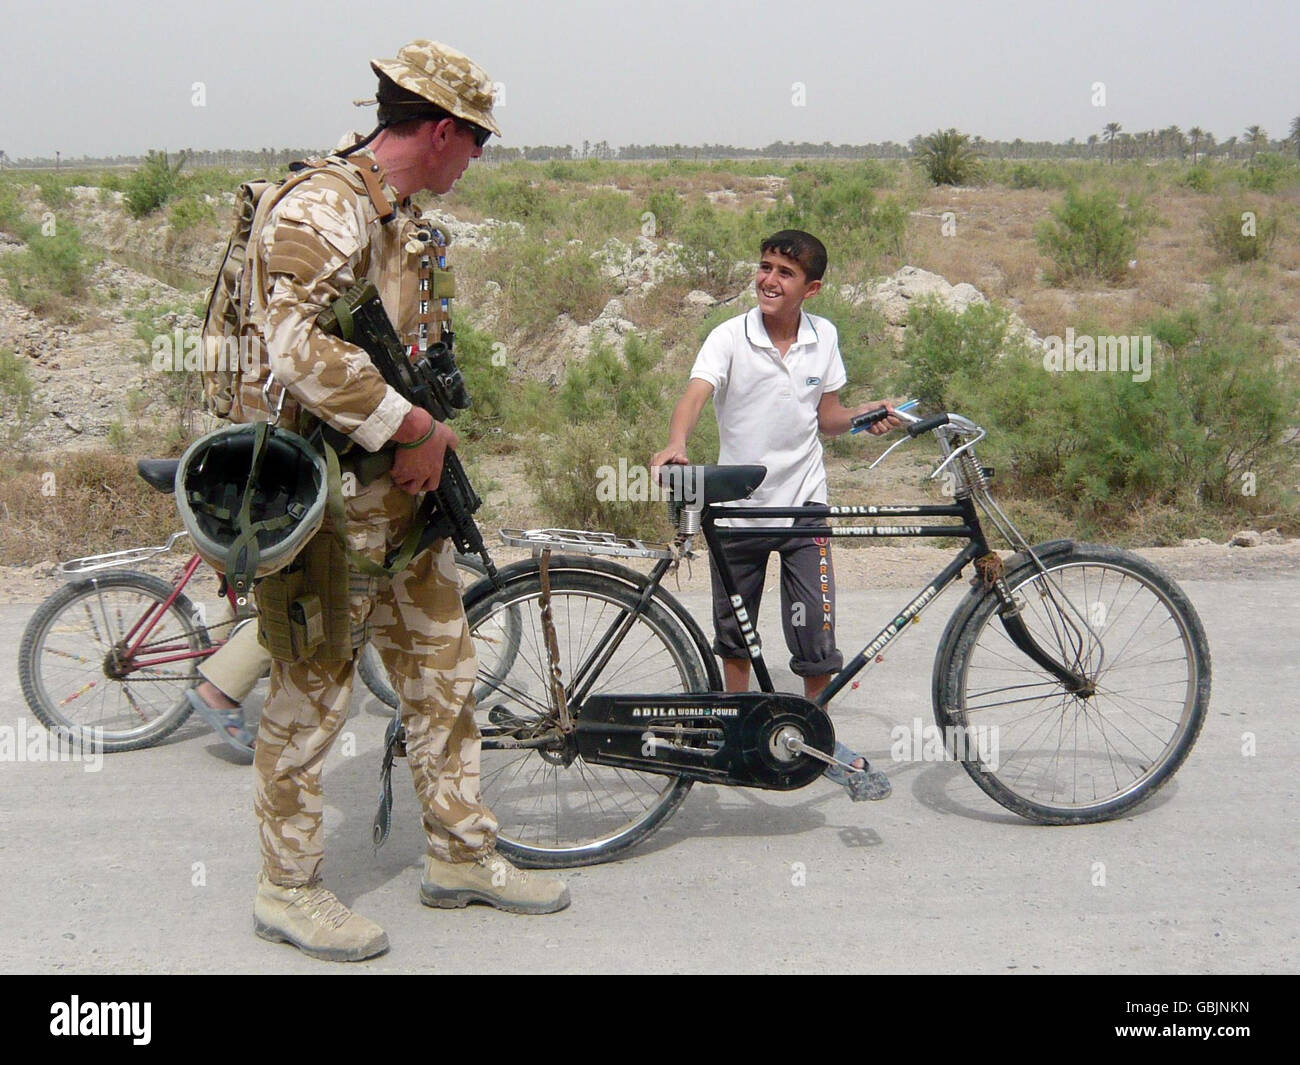 Major Jim Faux, von A-Company, 5 Gewehre, begrüßt einen jungen Jungen außerhalb von Al-Hartha, nördlich von Basra, Irak. Stockfoto